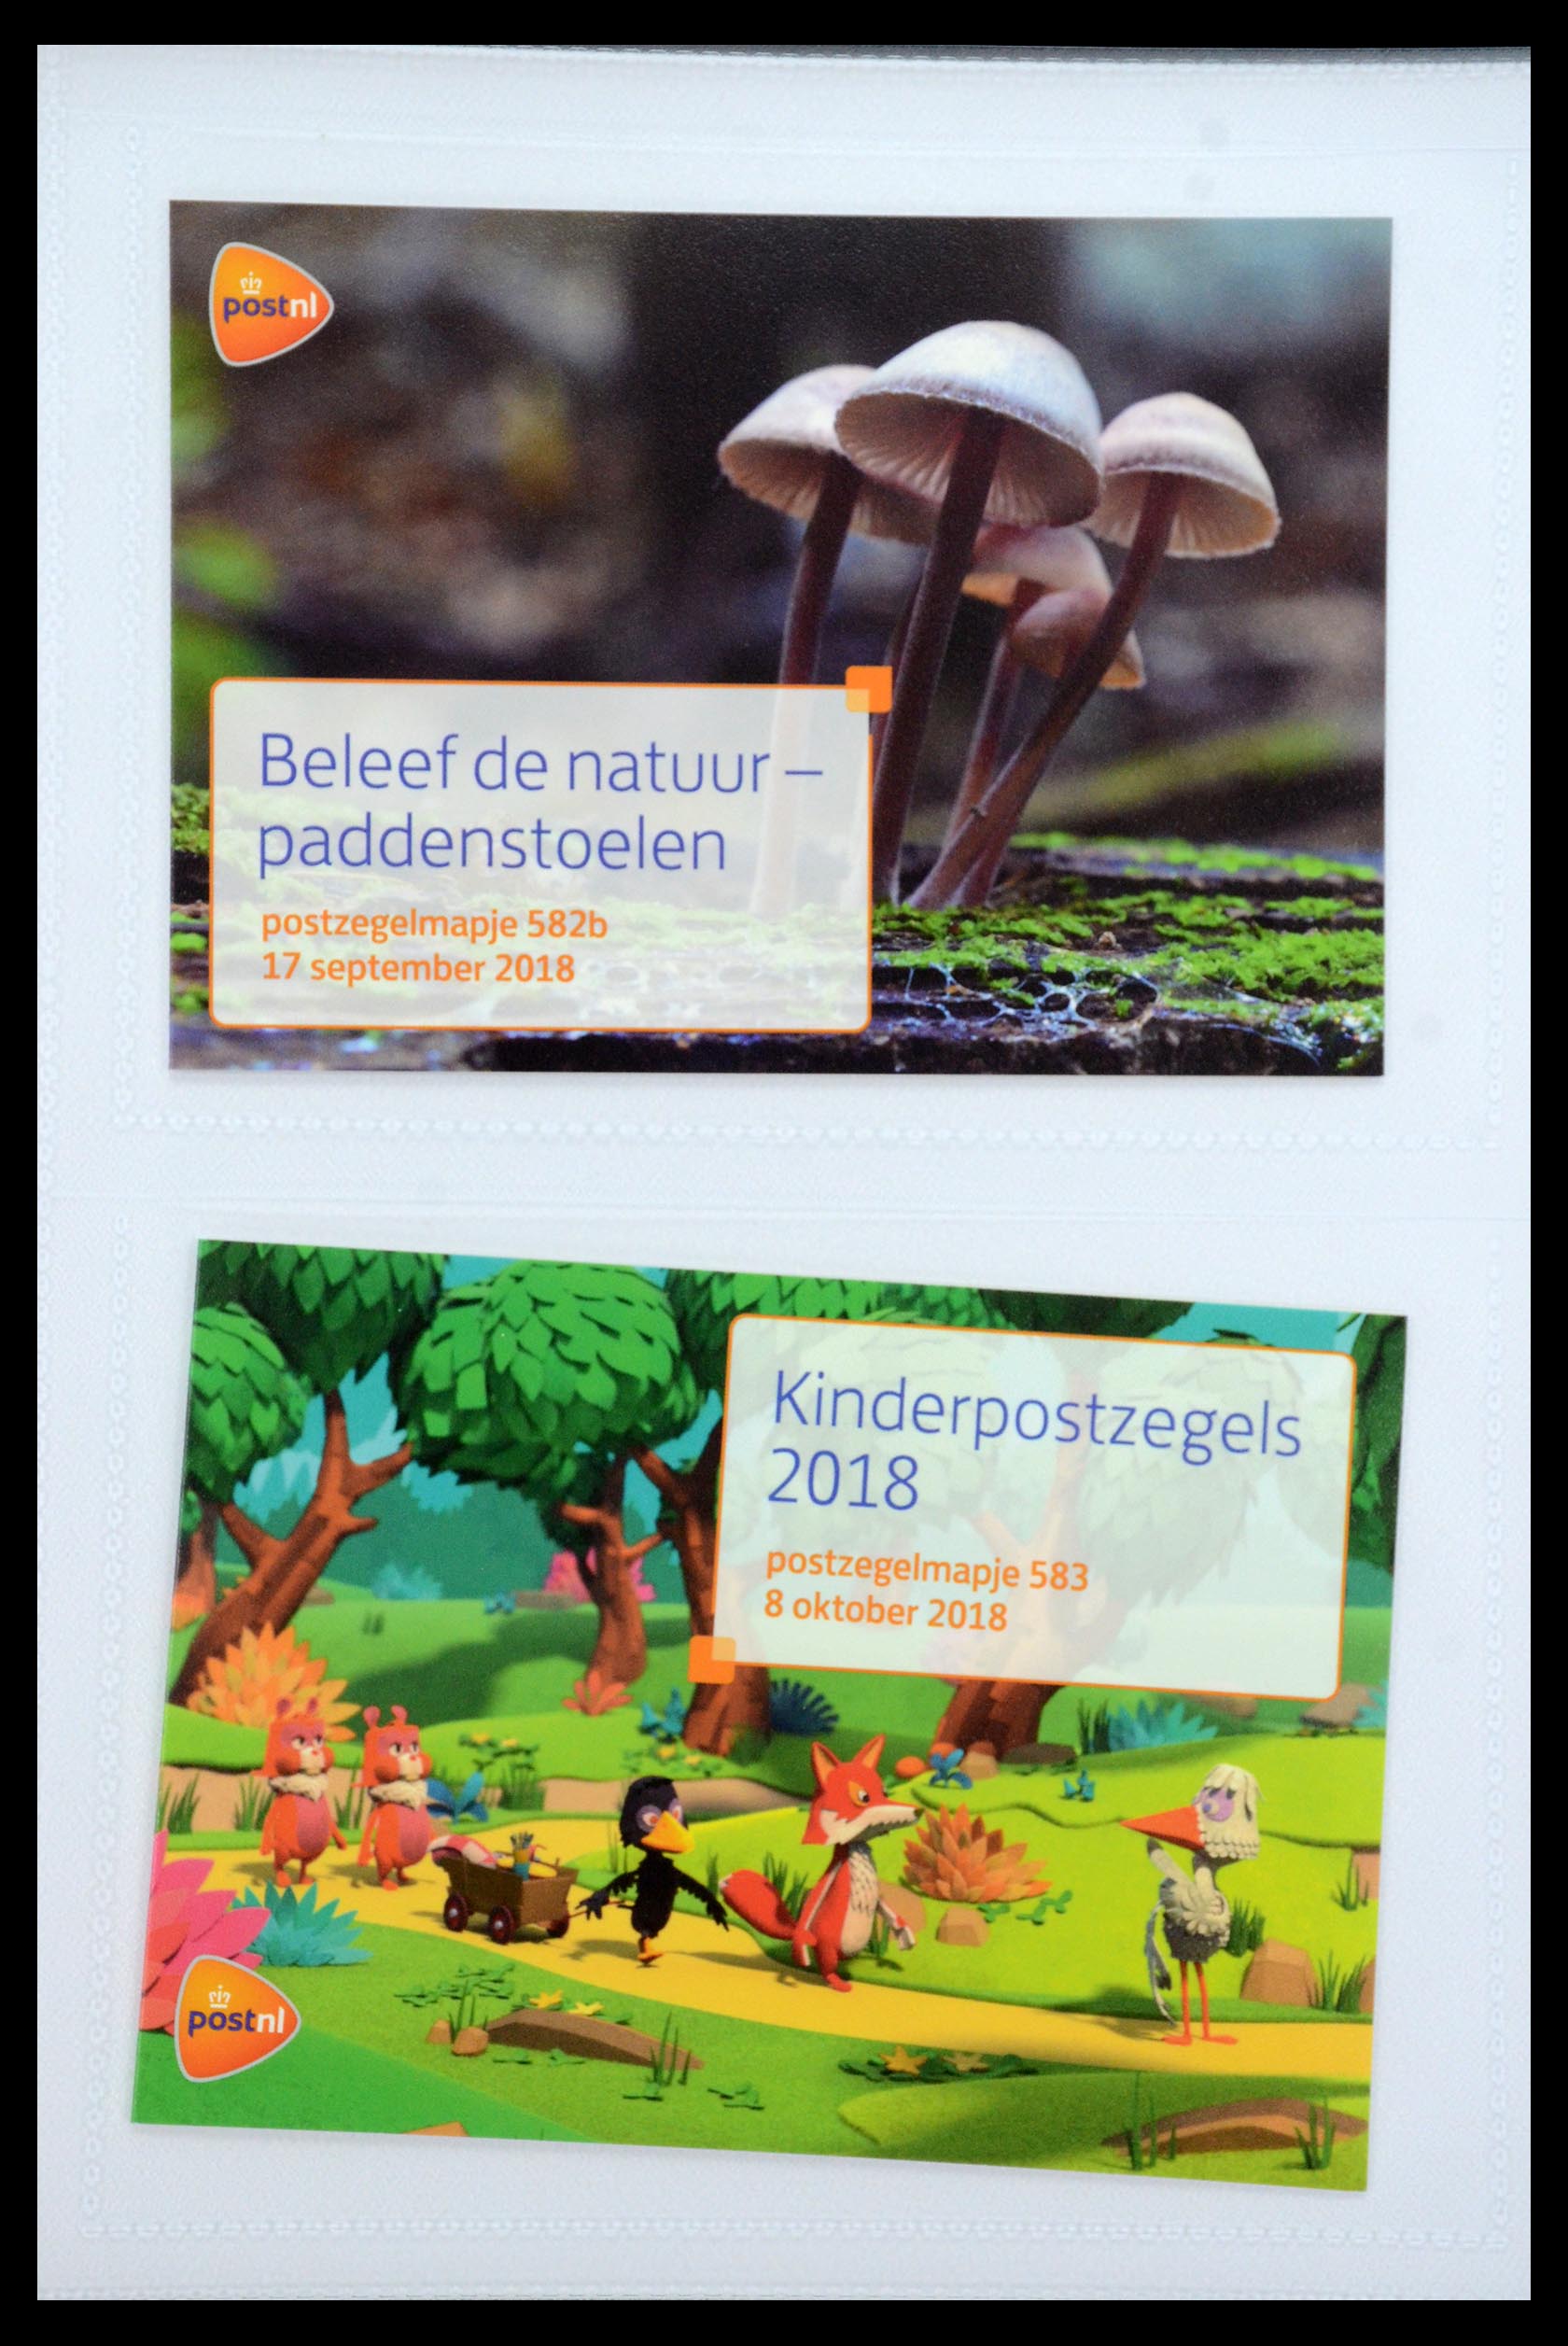 35947 352 - Stamp Collection 35947 Netherlands PTT presentation packs 1982-2019!